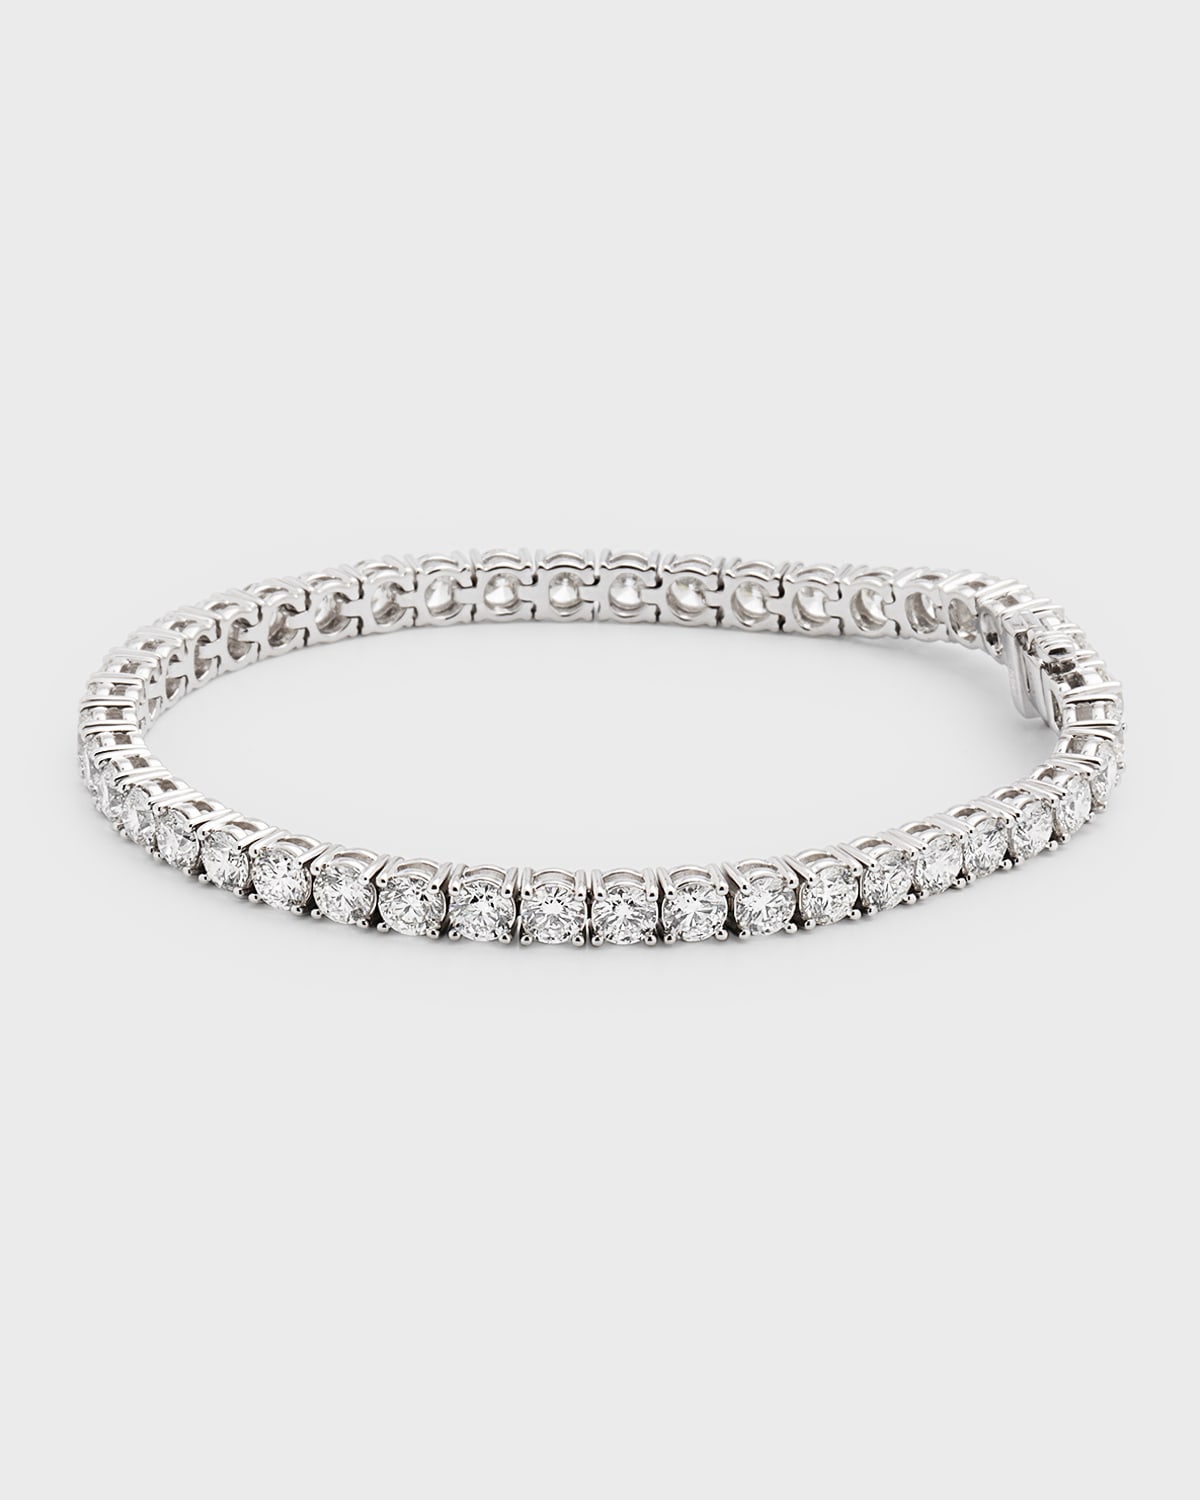 Neiman Marcus Diamonds 18k White Gold Fg-si1 Diamond Tennis Bracelet